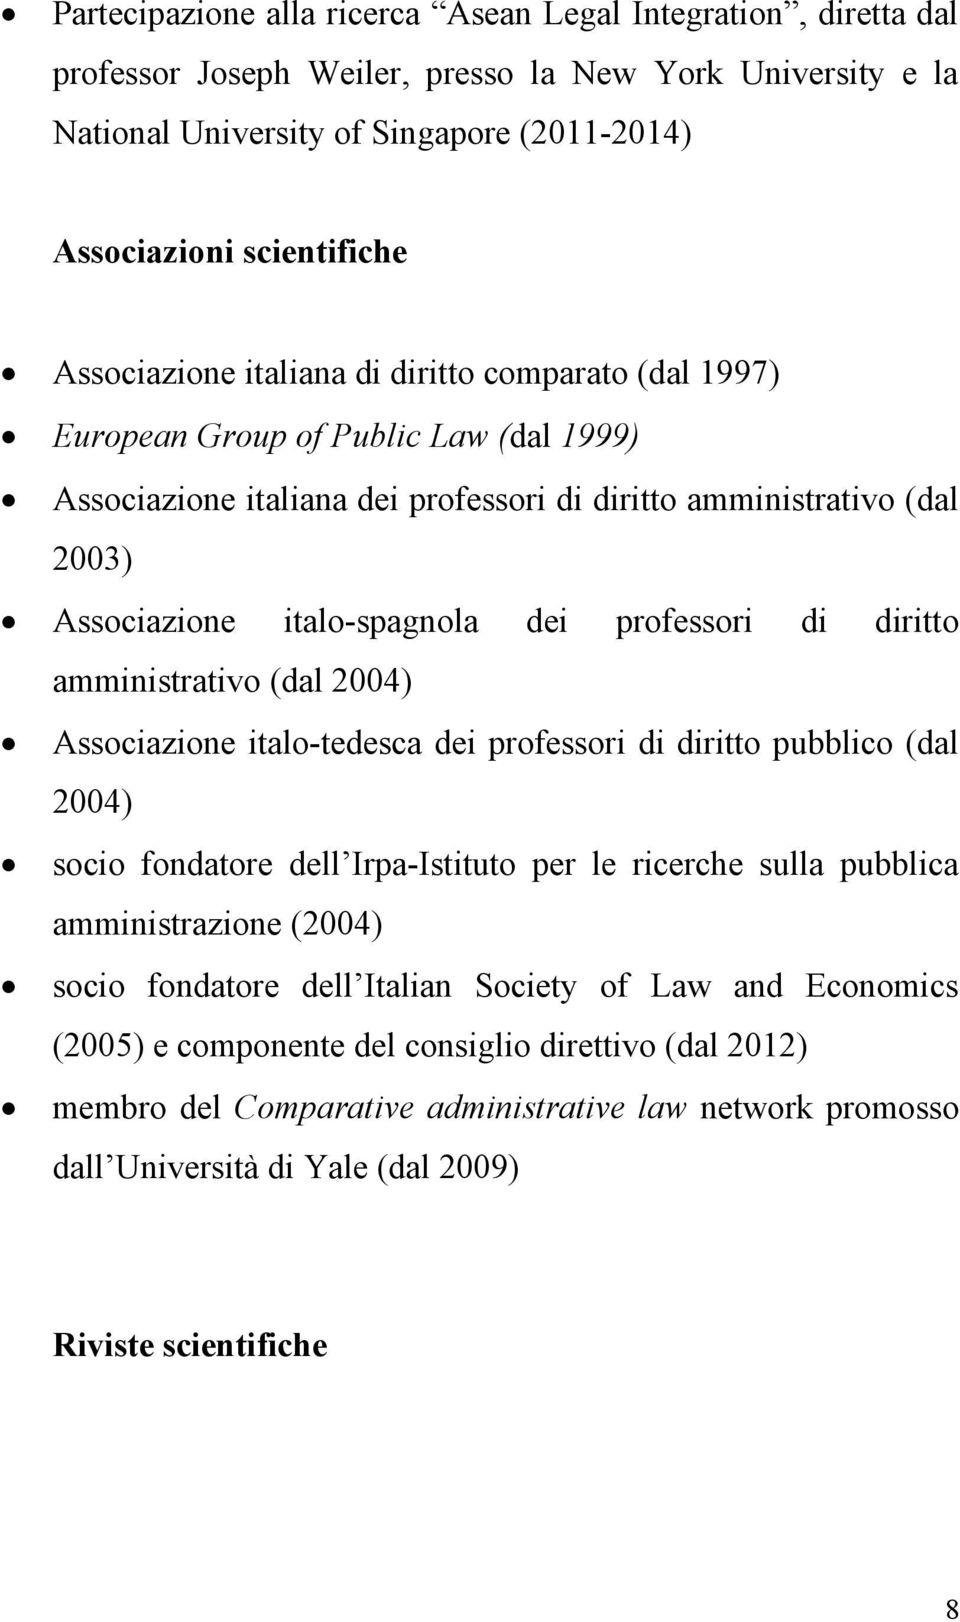 professori di diritto amministrativo (dal 2004) Associazione italo-tedesca dei professori di diritto pubblico (dal 2004) socio fondatore dell Irpa-Istituto per le ricerche sulla pubblica